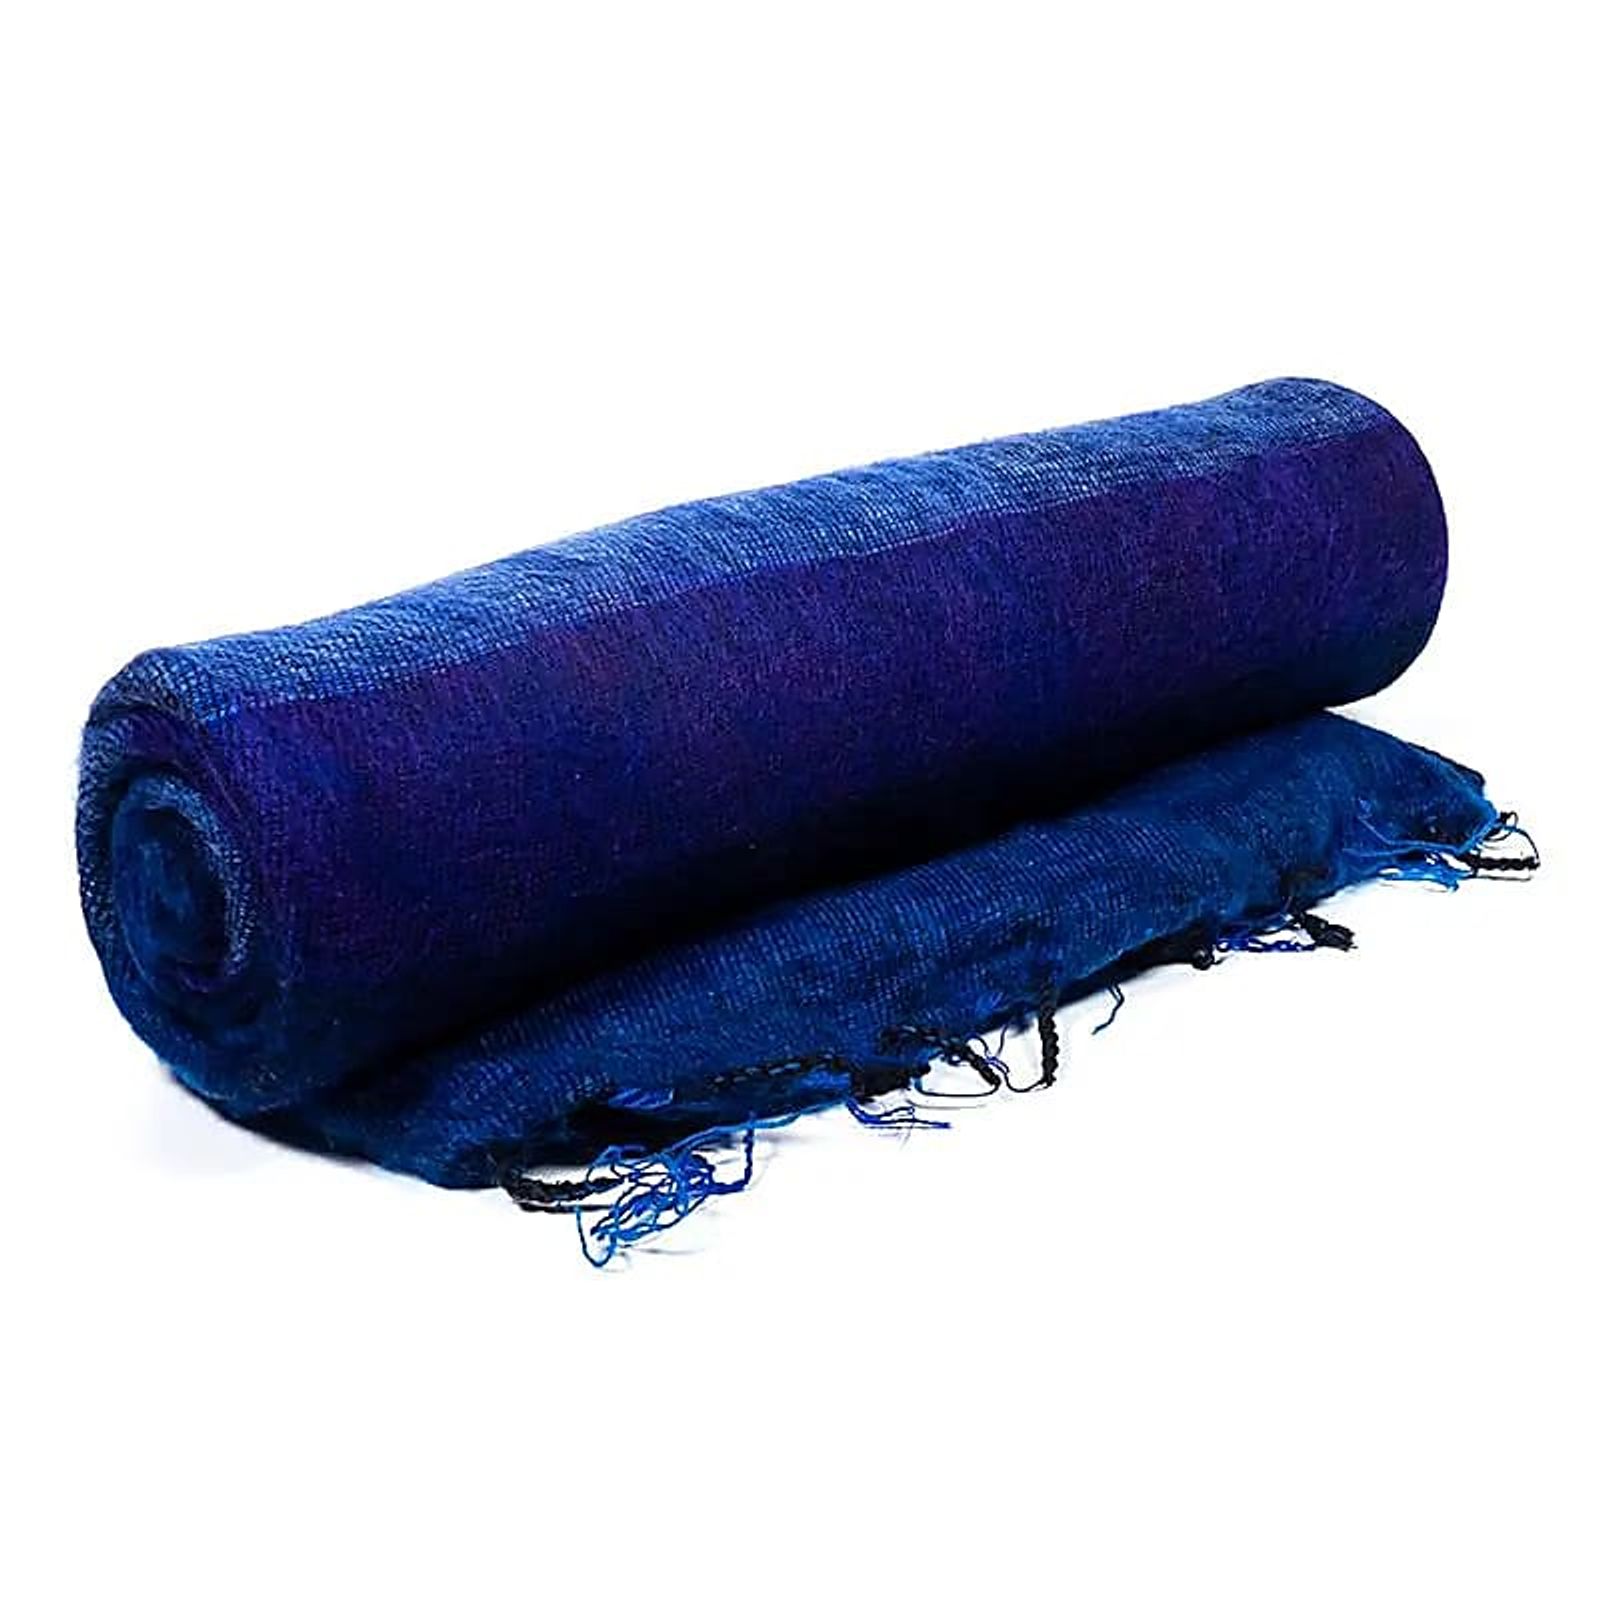 Meditationdecke XL blau/violett -- 115x245 cm